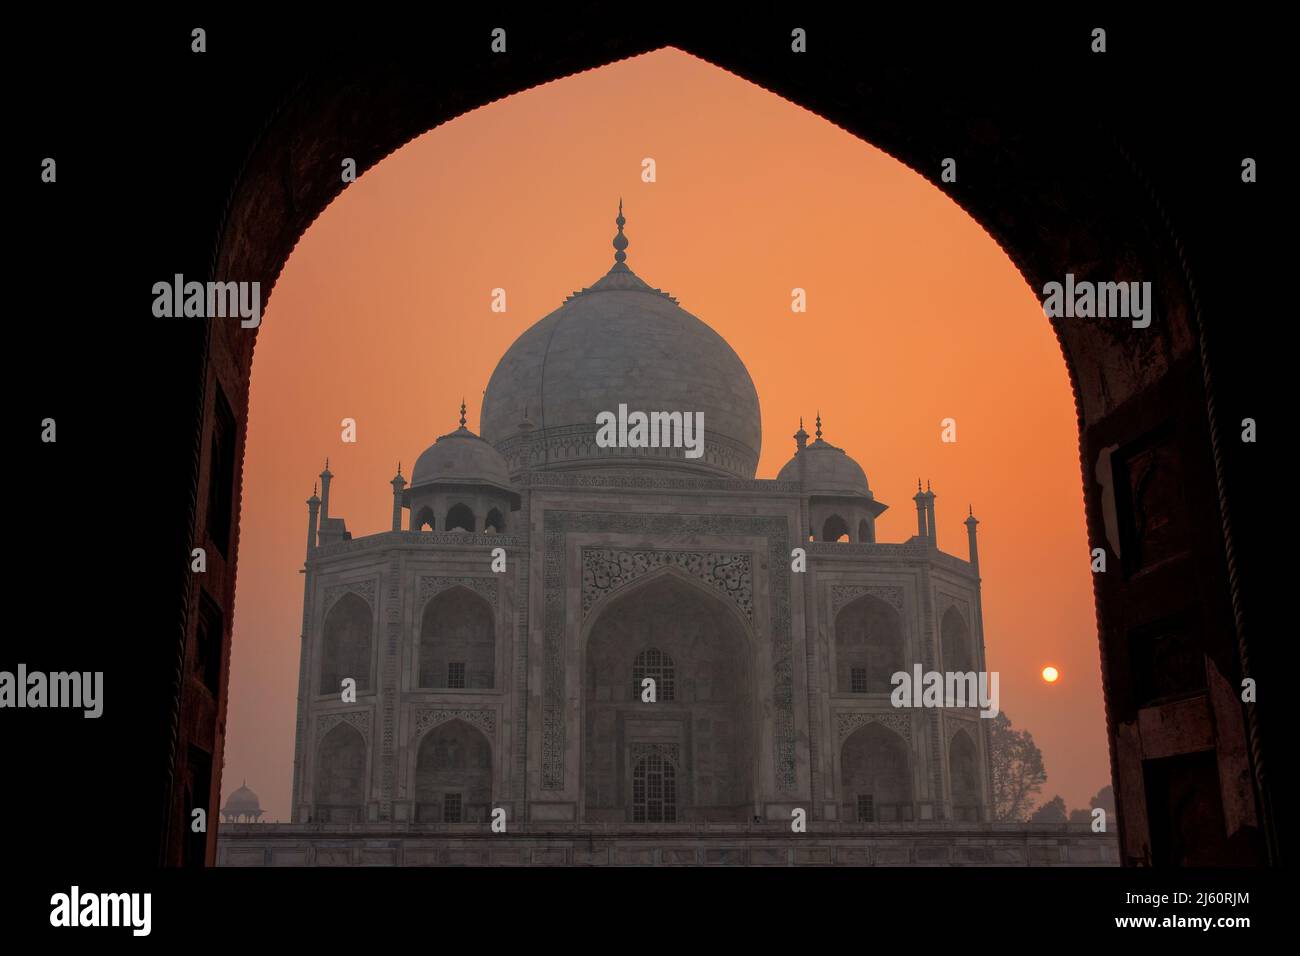 Taj Mahal al amanecer enmarcada con un arco de la mezquita, Agra, Uttar Pradesh, India. Taj Mahal fue designado como Patrimonio de la Humanidad por la UNESCO en 1983. Foto de stock